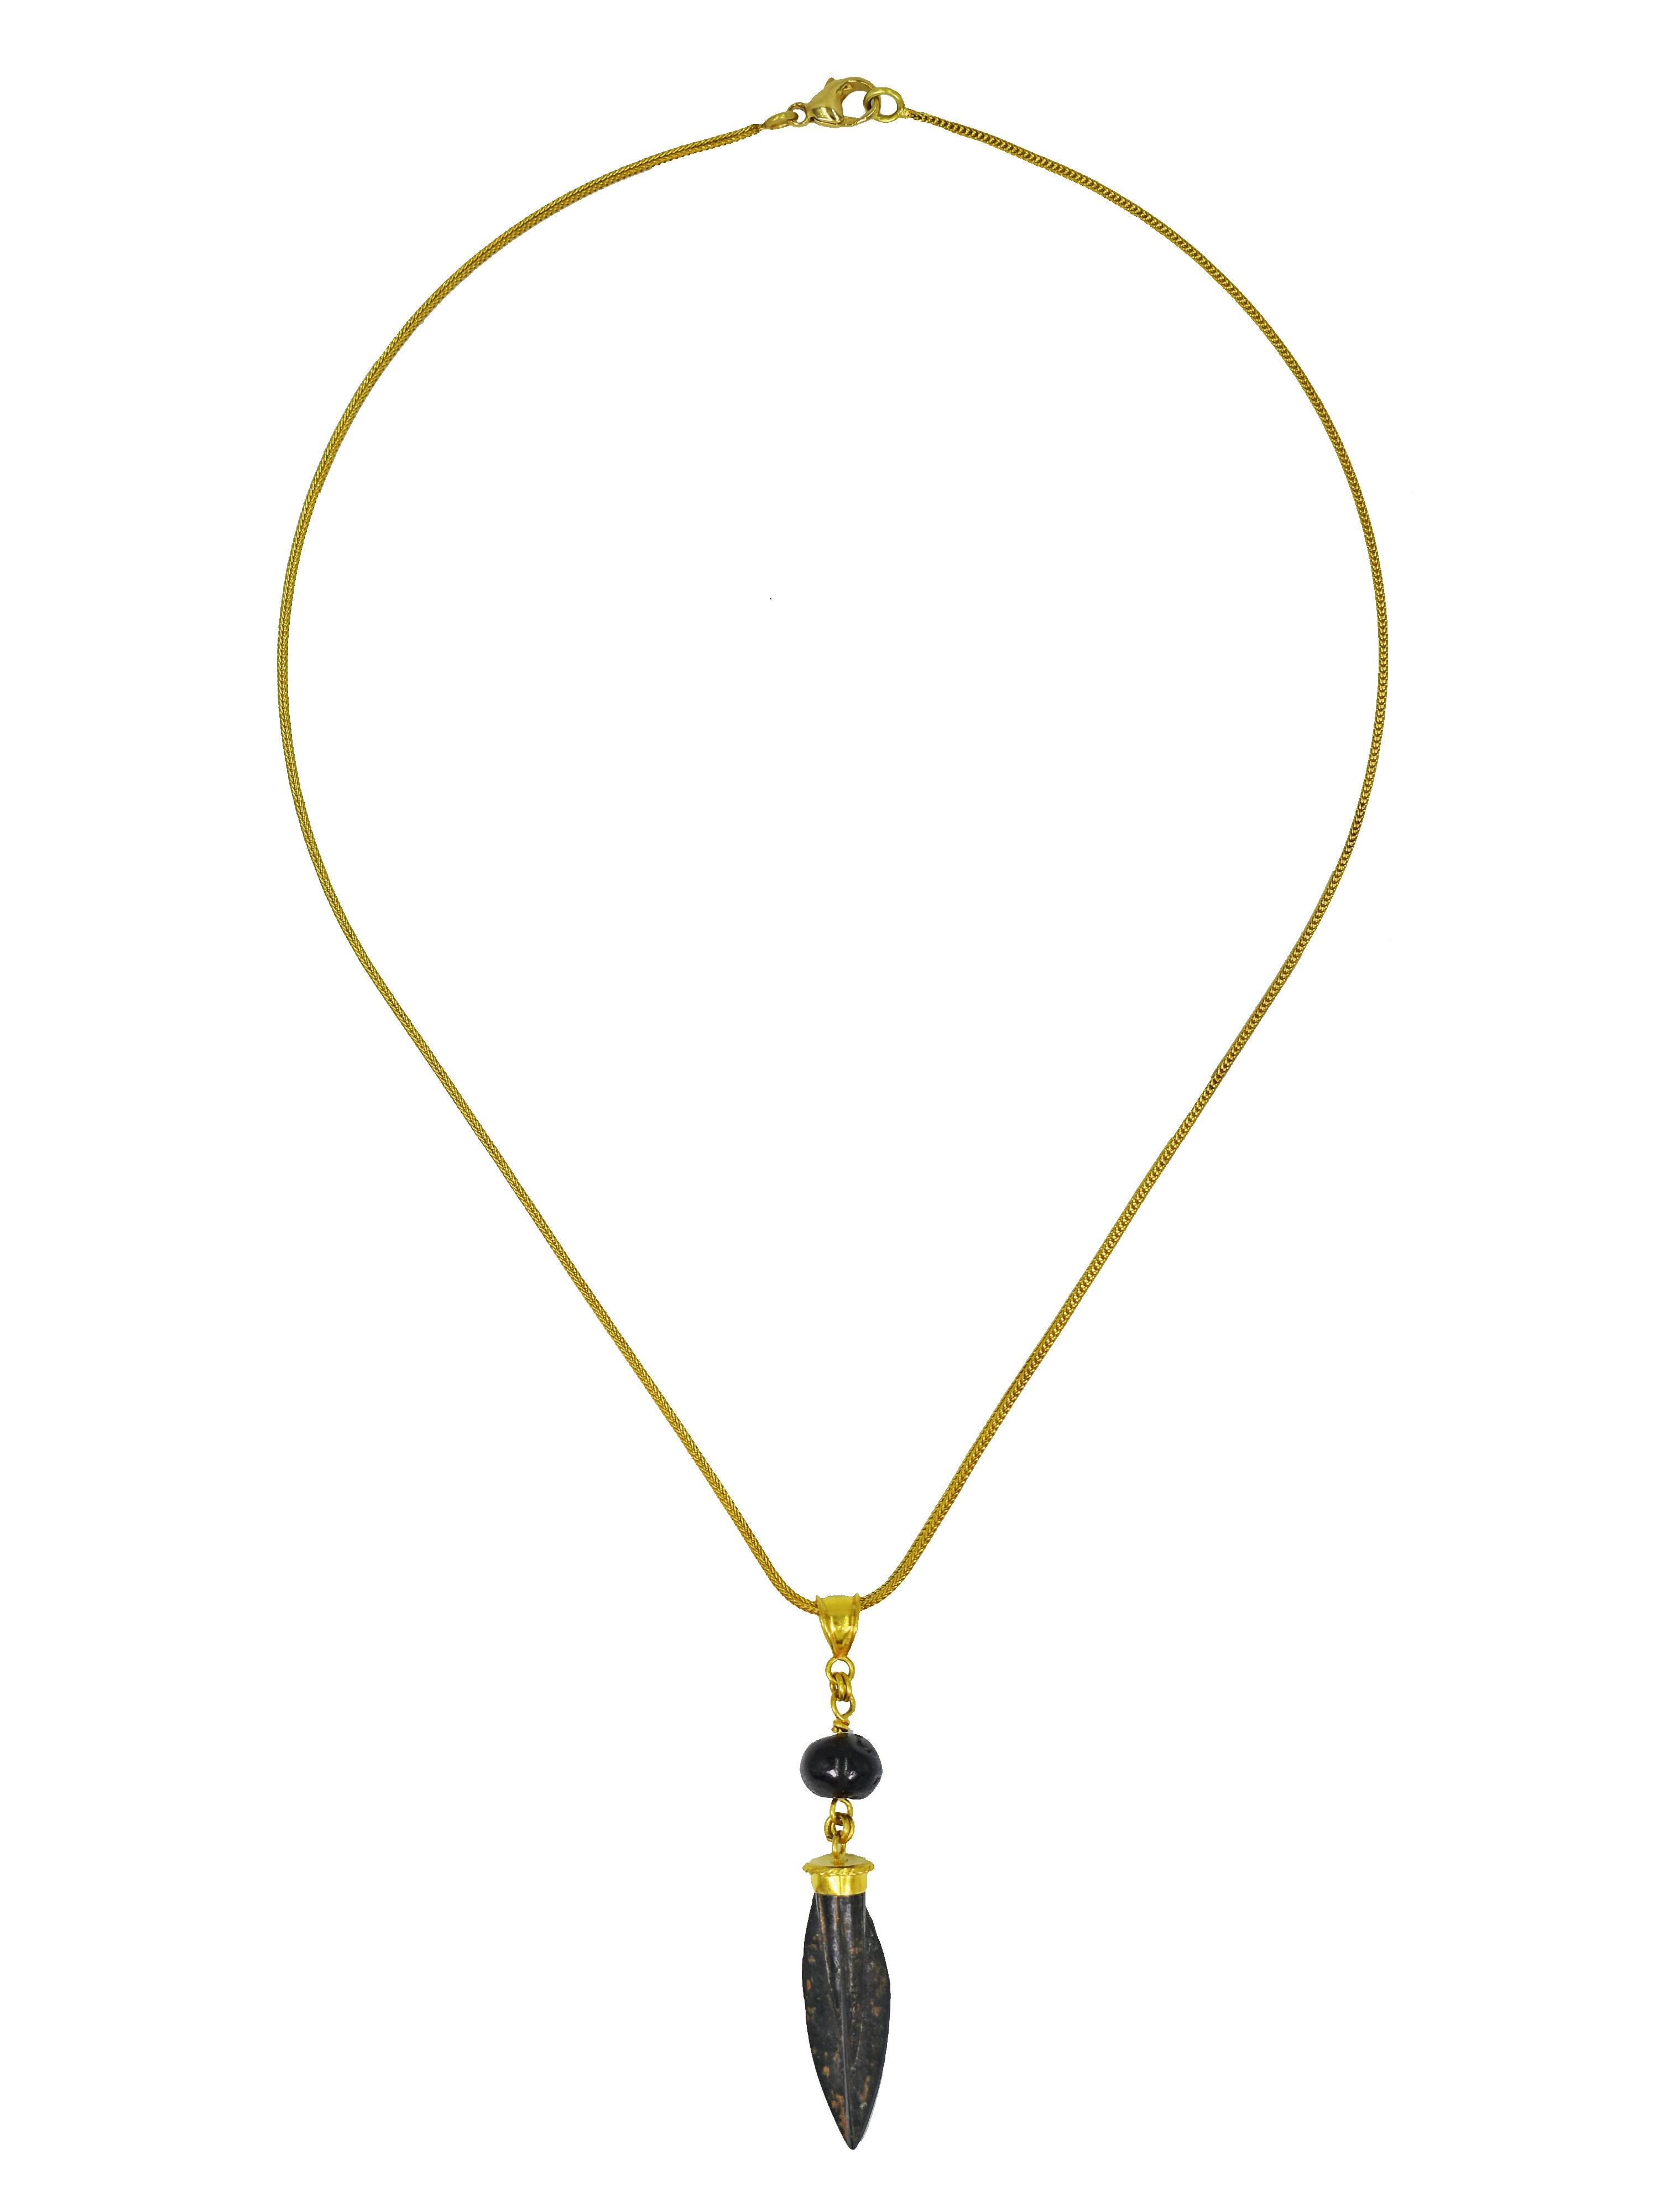 Authentique tête de flèche romaine antique en bronze et pendentif en or jaune 22k en forme de perle de grenat antique sur chaîne en or 18k avec boucles d'oreilles assorties en or 22k en forme de perle de grenat antique. La chaîne mesure 18 pouces de